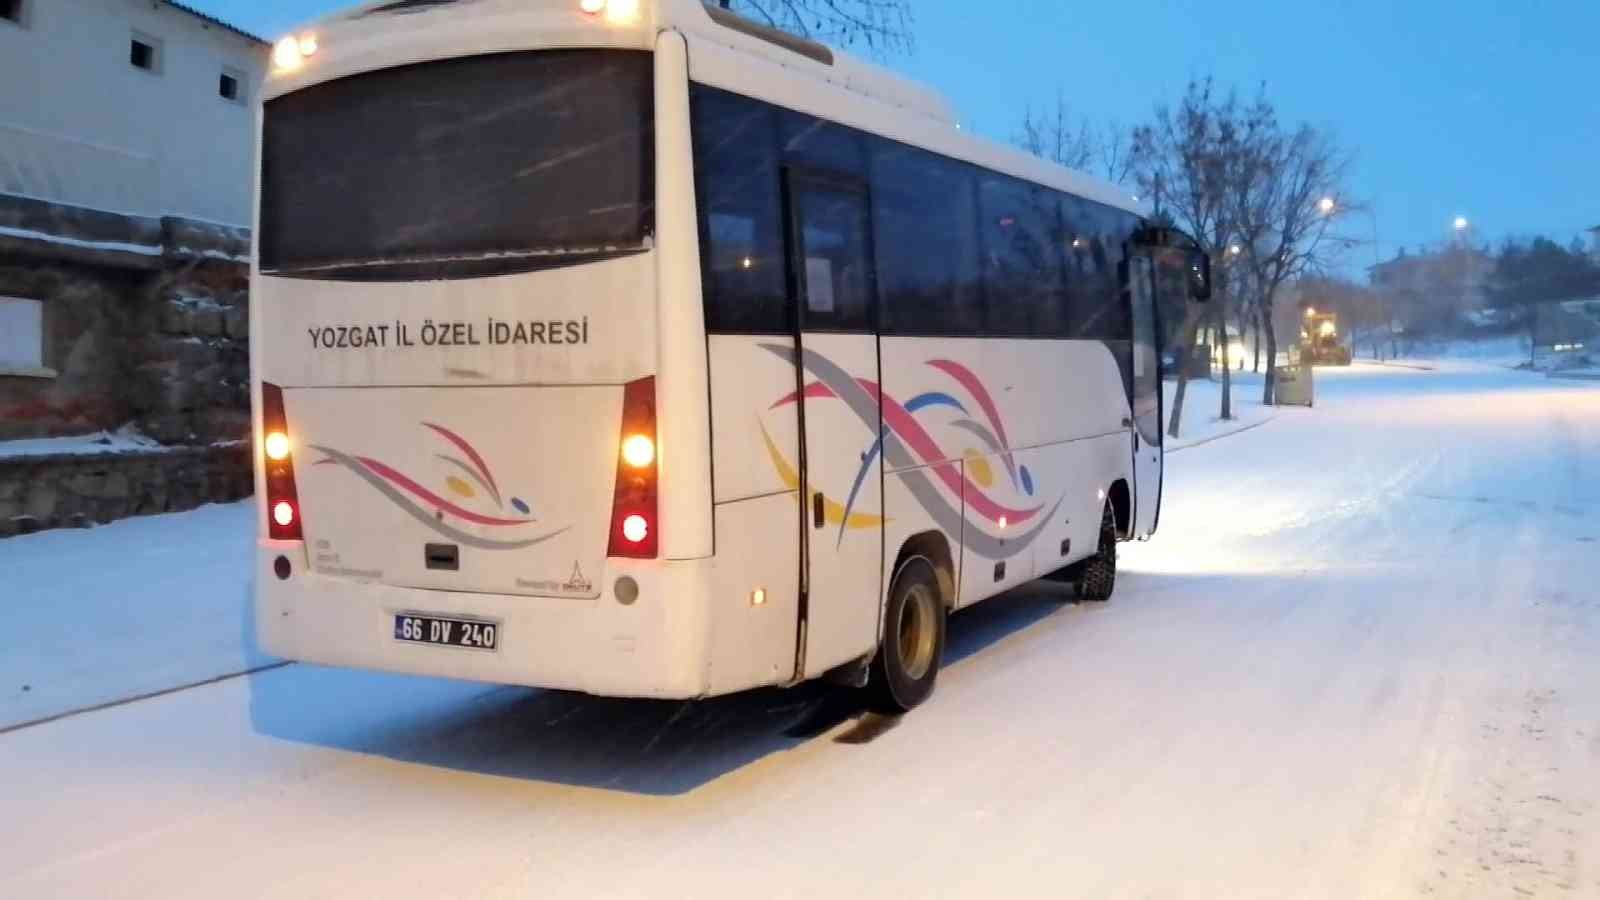 Yozgat’ta buzlanan yollarda sürücüler zor anlar yaşadı #yozgat